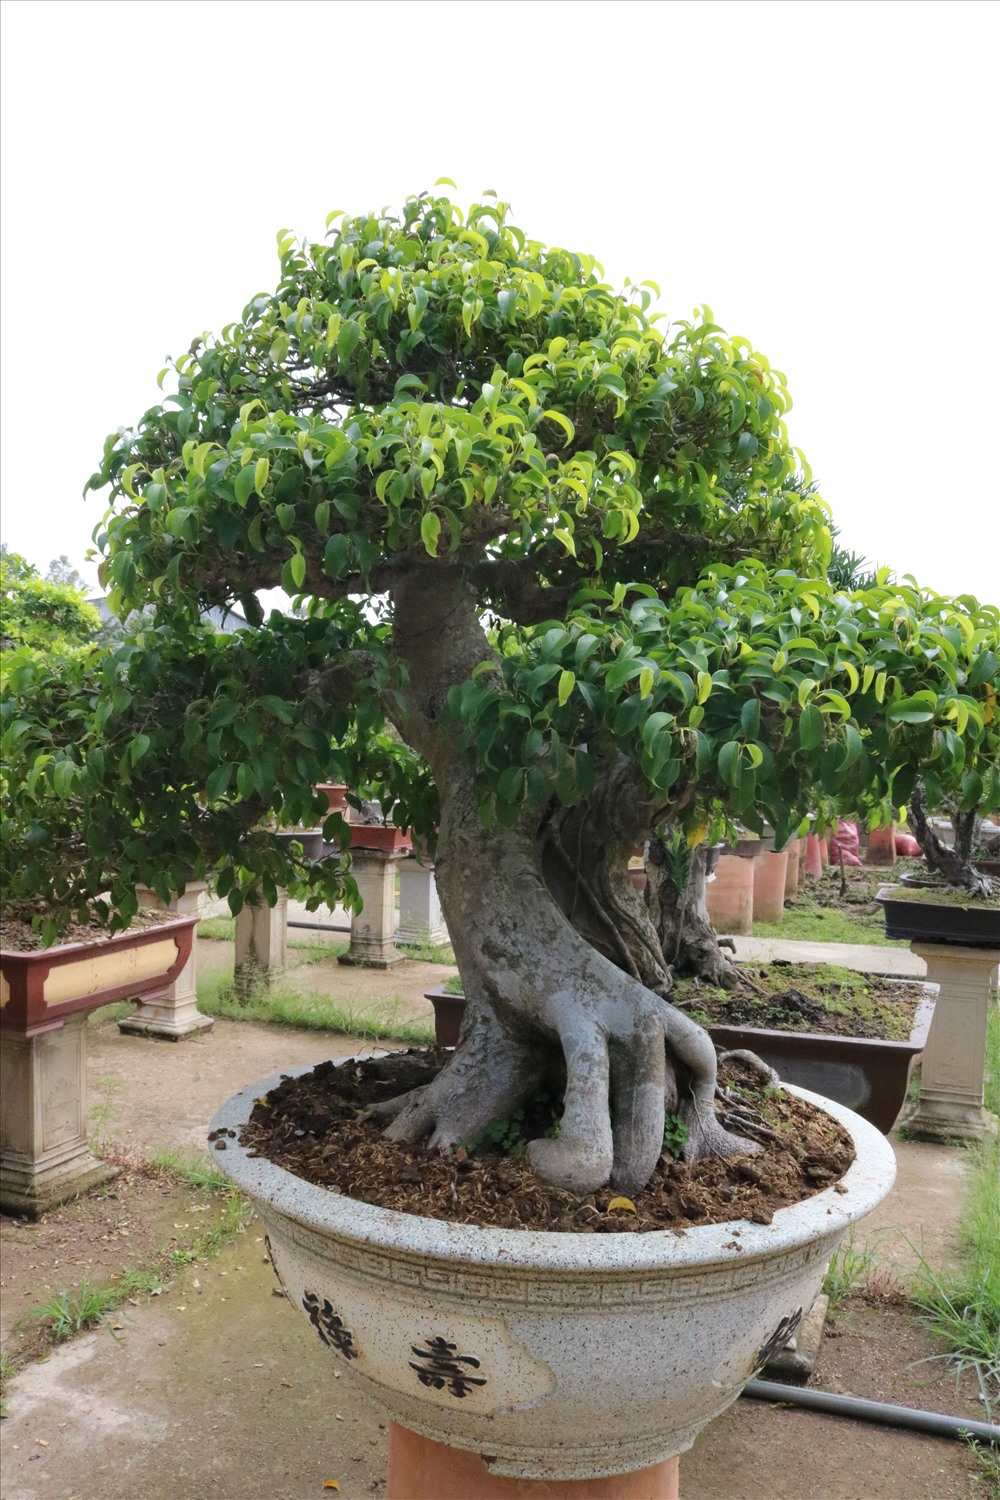 Ở mỗi quốc gia sẽ có tiêu chí về bonsai khác nhau, đối với quốc tế cây bonsai đẹp phụ thuộc vào độ già của cây, độ ấn tượng và độ đẹp, quy luật sắp xếp cành bonsai theo điểm lõm, dư chi.